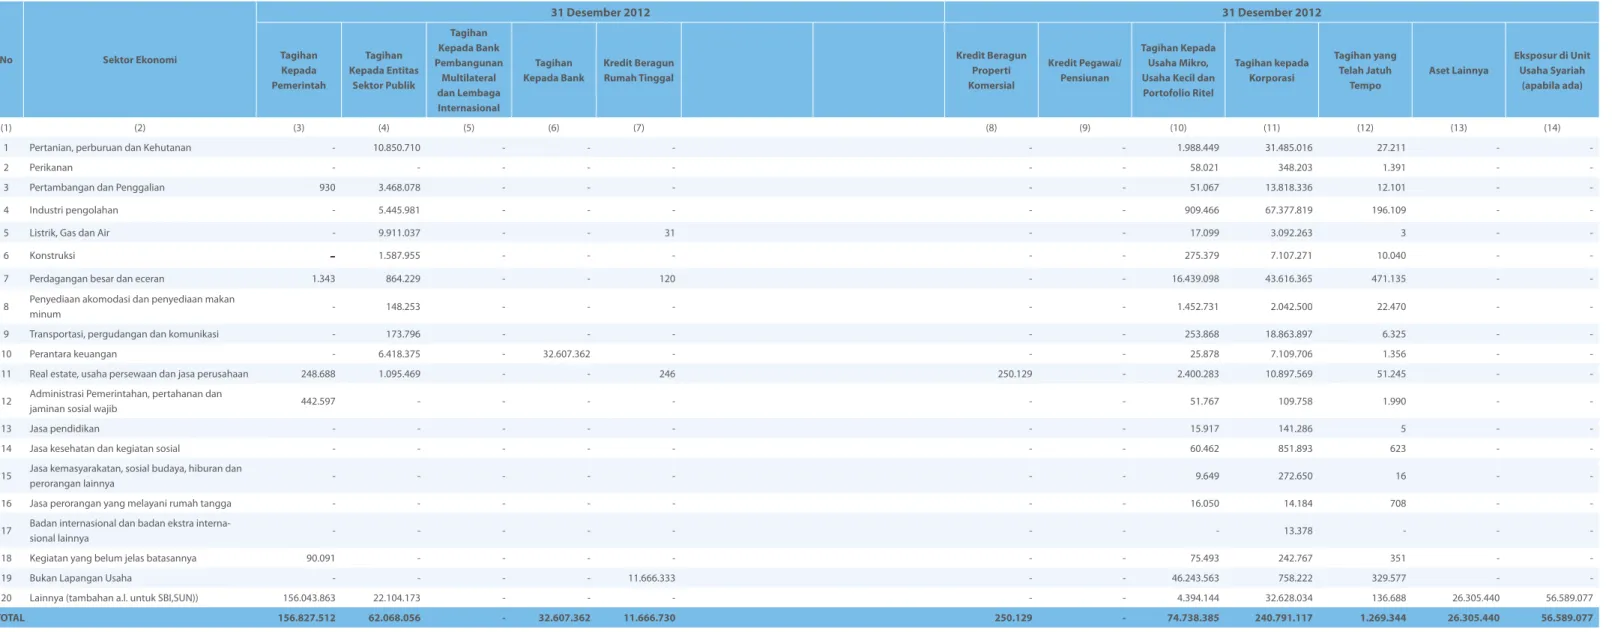 Tabel 2.3.b Pengungkapan Tagihan Bersih Berdasarkan Sektor Ekonomi - Bank Secara Konsolidasi dengan  Perusahaan Anak (dalam Jutaan Rupiah)  